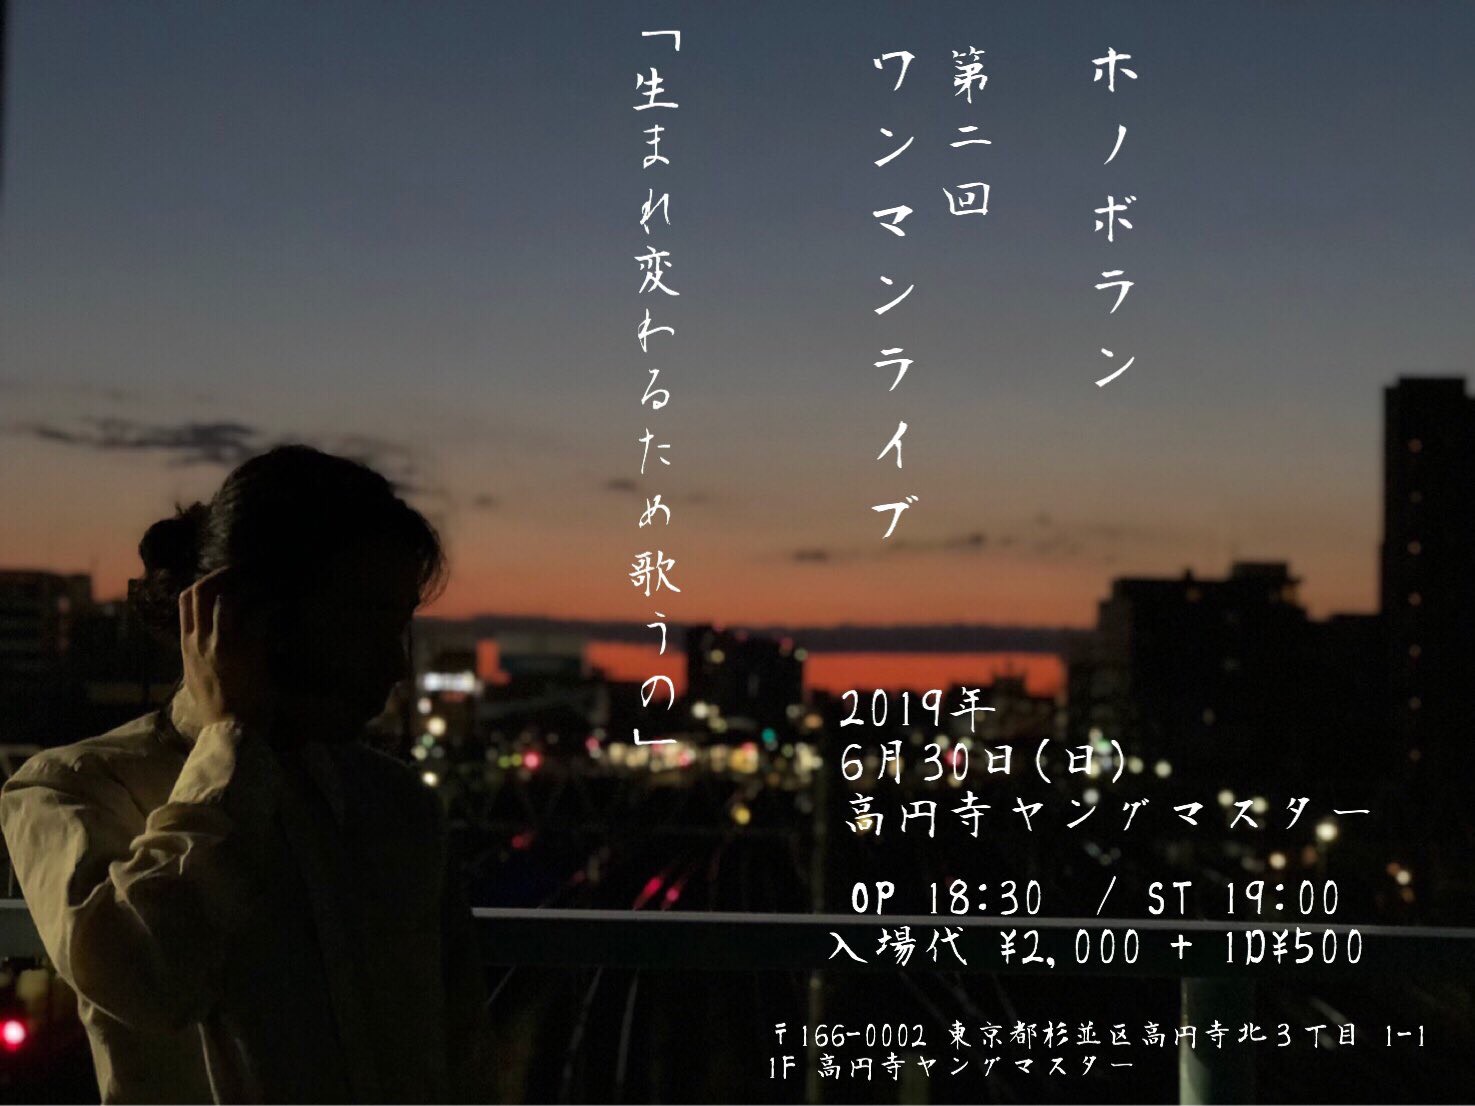 6/30 (日) 高円寺ヤングマスター ホノボラン 第二回ワンマンライブ 「生まれ変わるため歌うの」